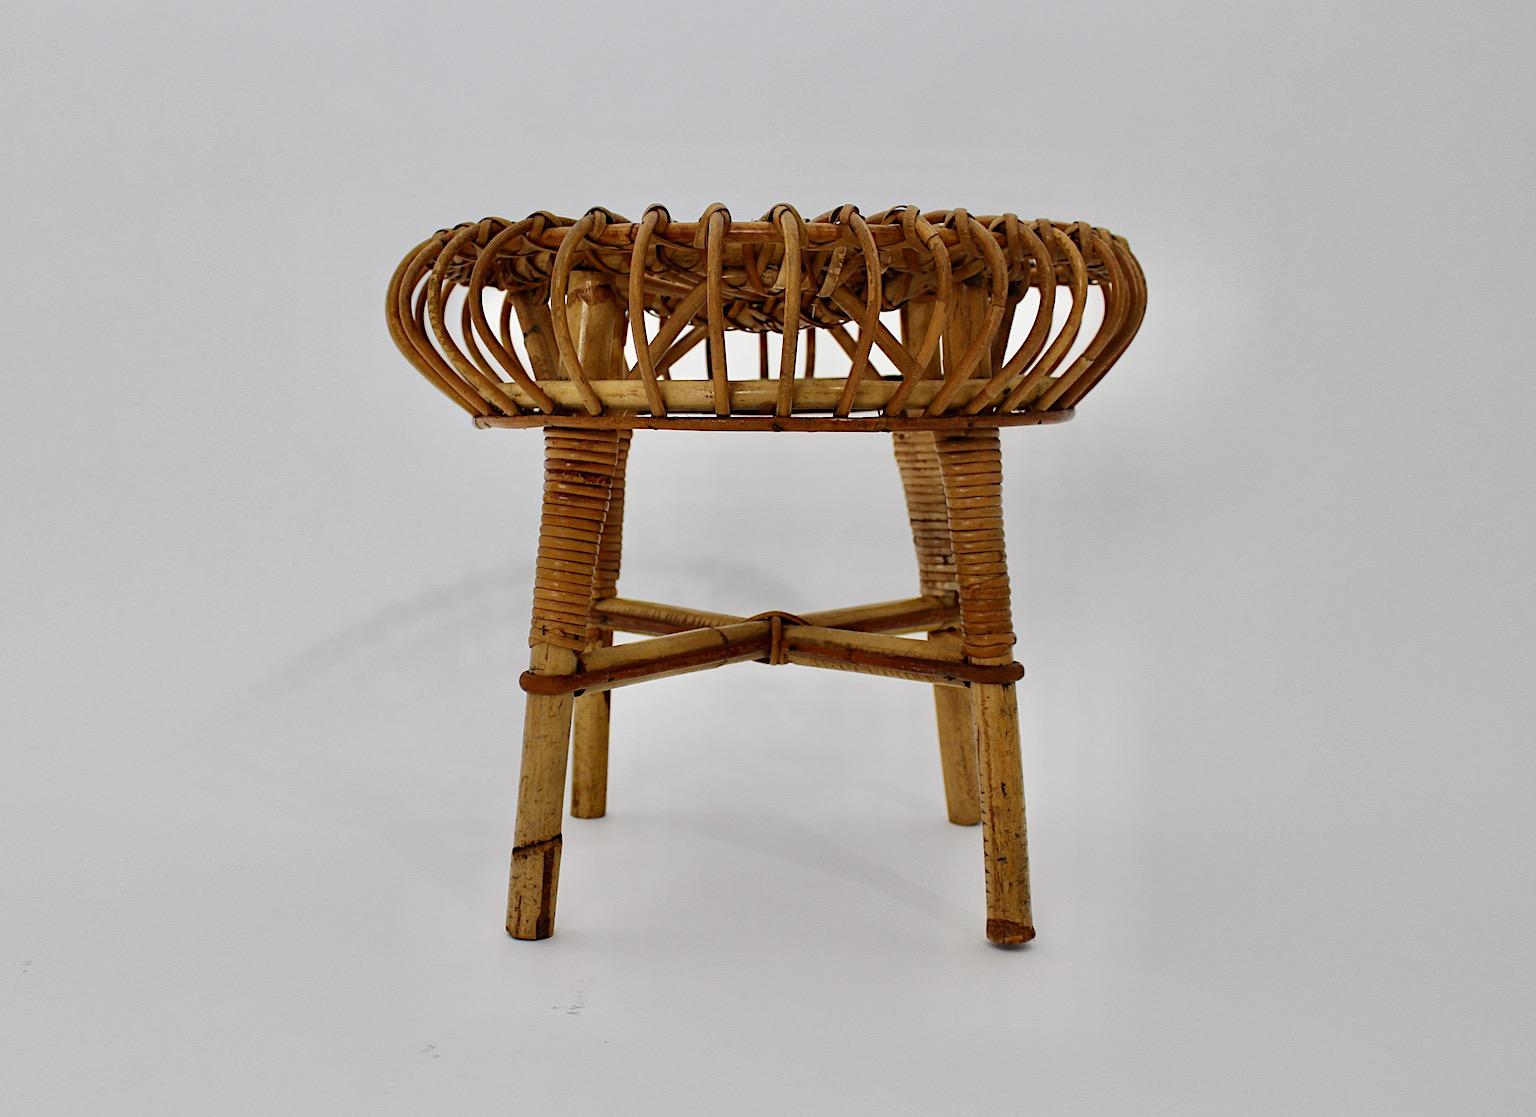 Tabouret vintage de style circulaire en rotin, attribué à Bonacina, Italie, années 1950.
Un tabouret circulaire étonnant avec un beau réseau de rotin au siège et du rotin enveloppé aux jambes dans un état stable et robuste.
Un tabouret léger et